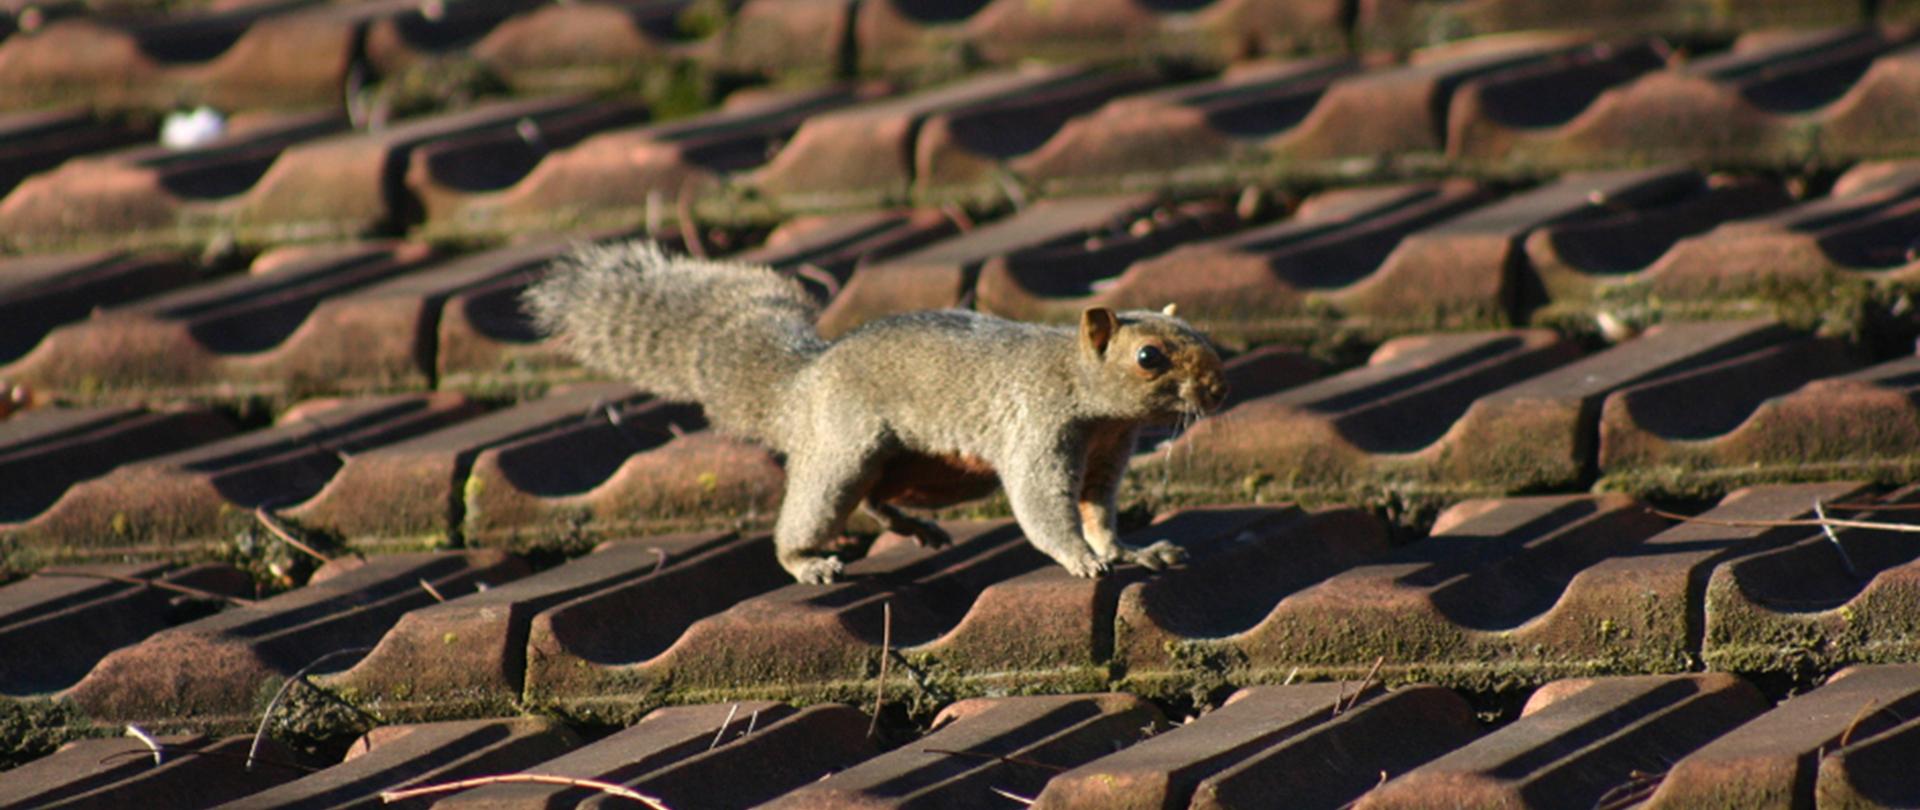 Po środku wiewiórczak rdzawobrzuchy o burej sierści spacerujący po dachu.